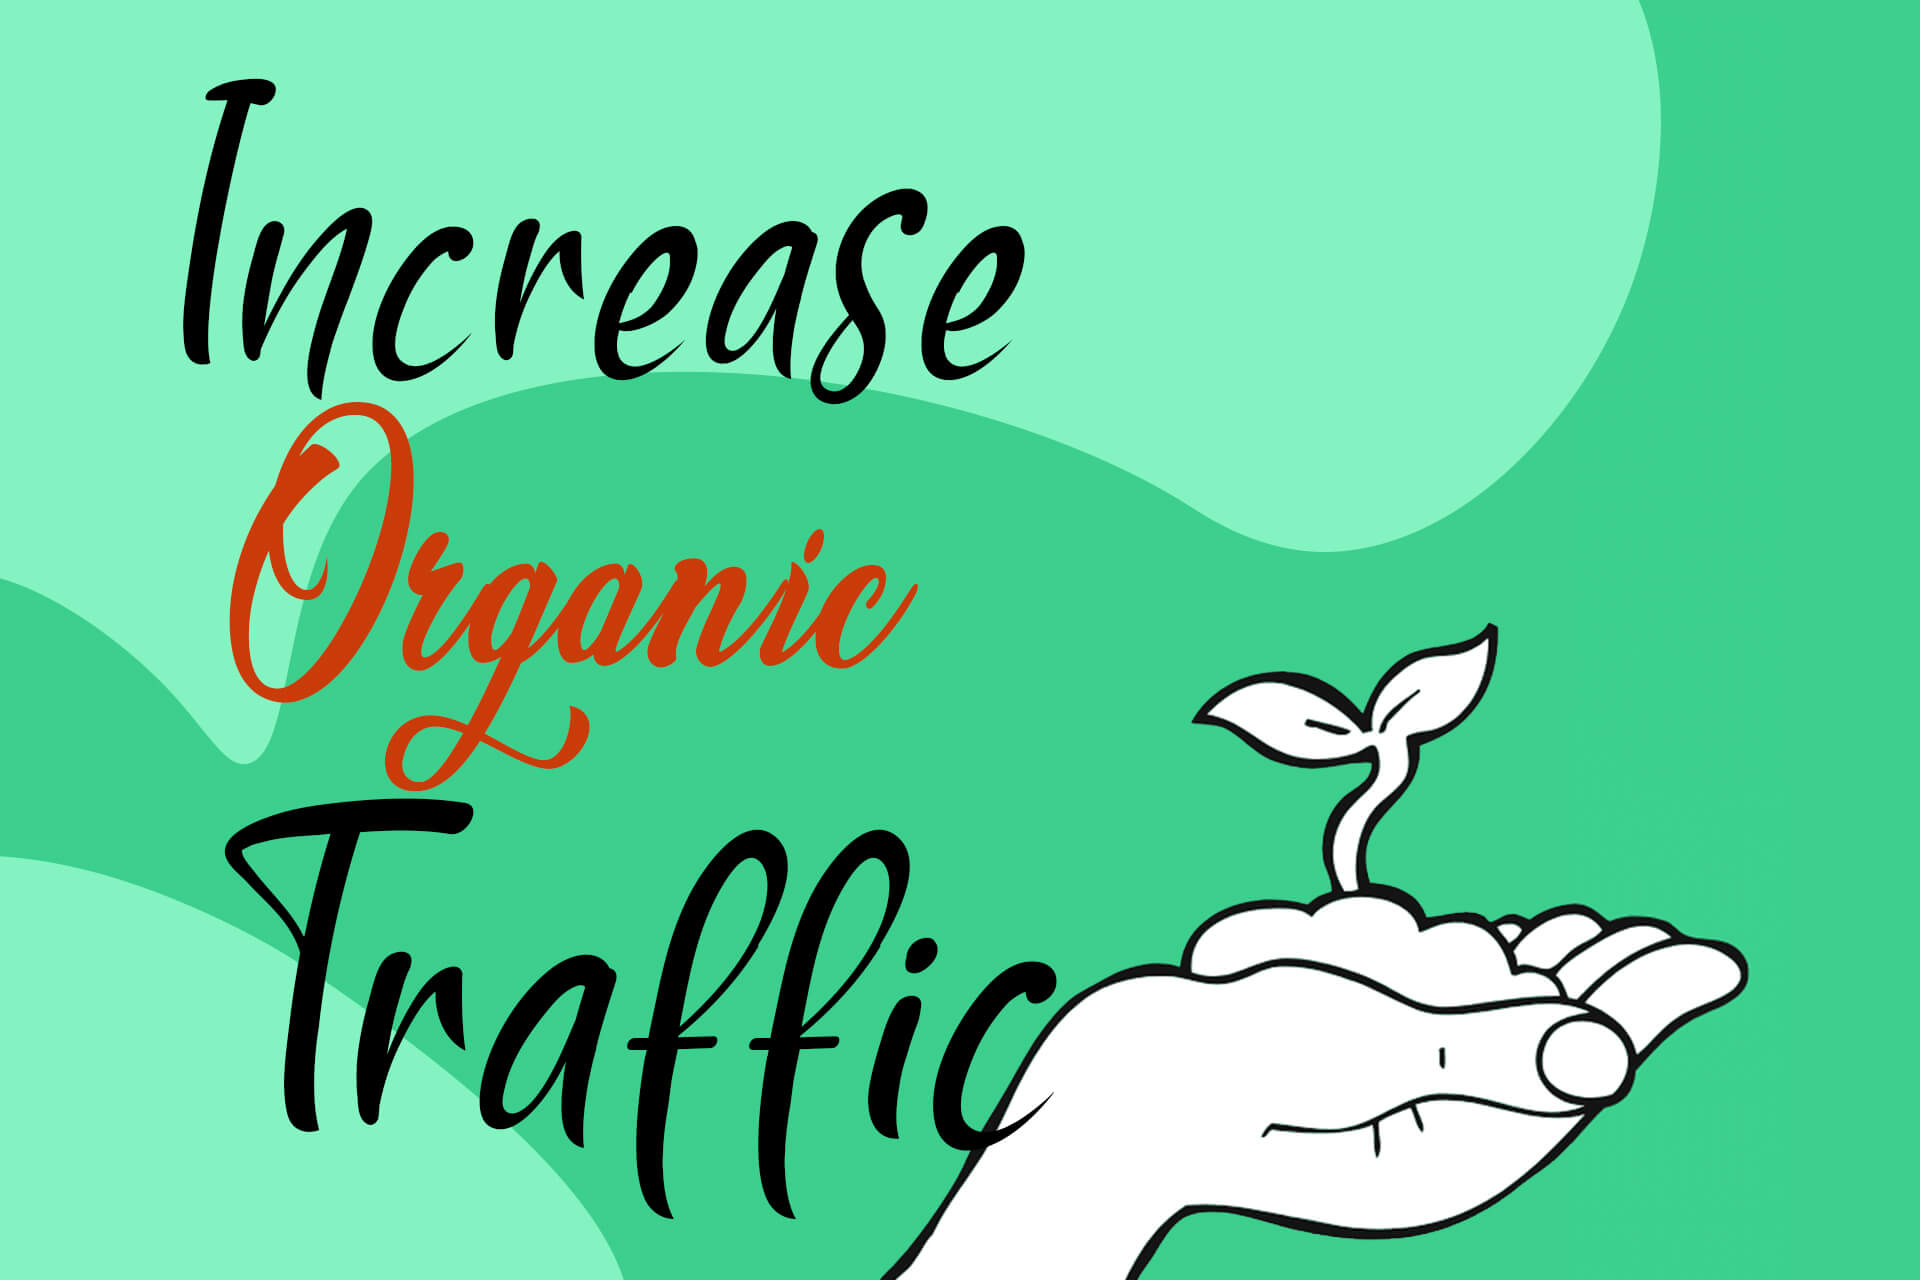 You can increase organic traffic